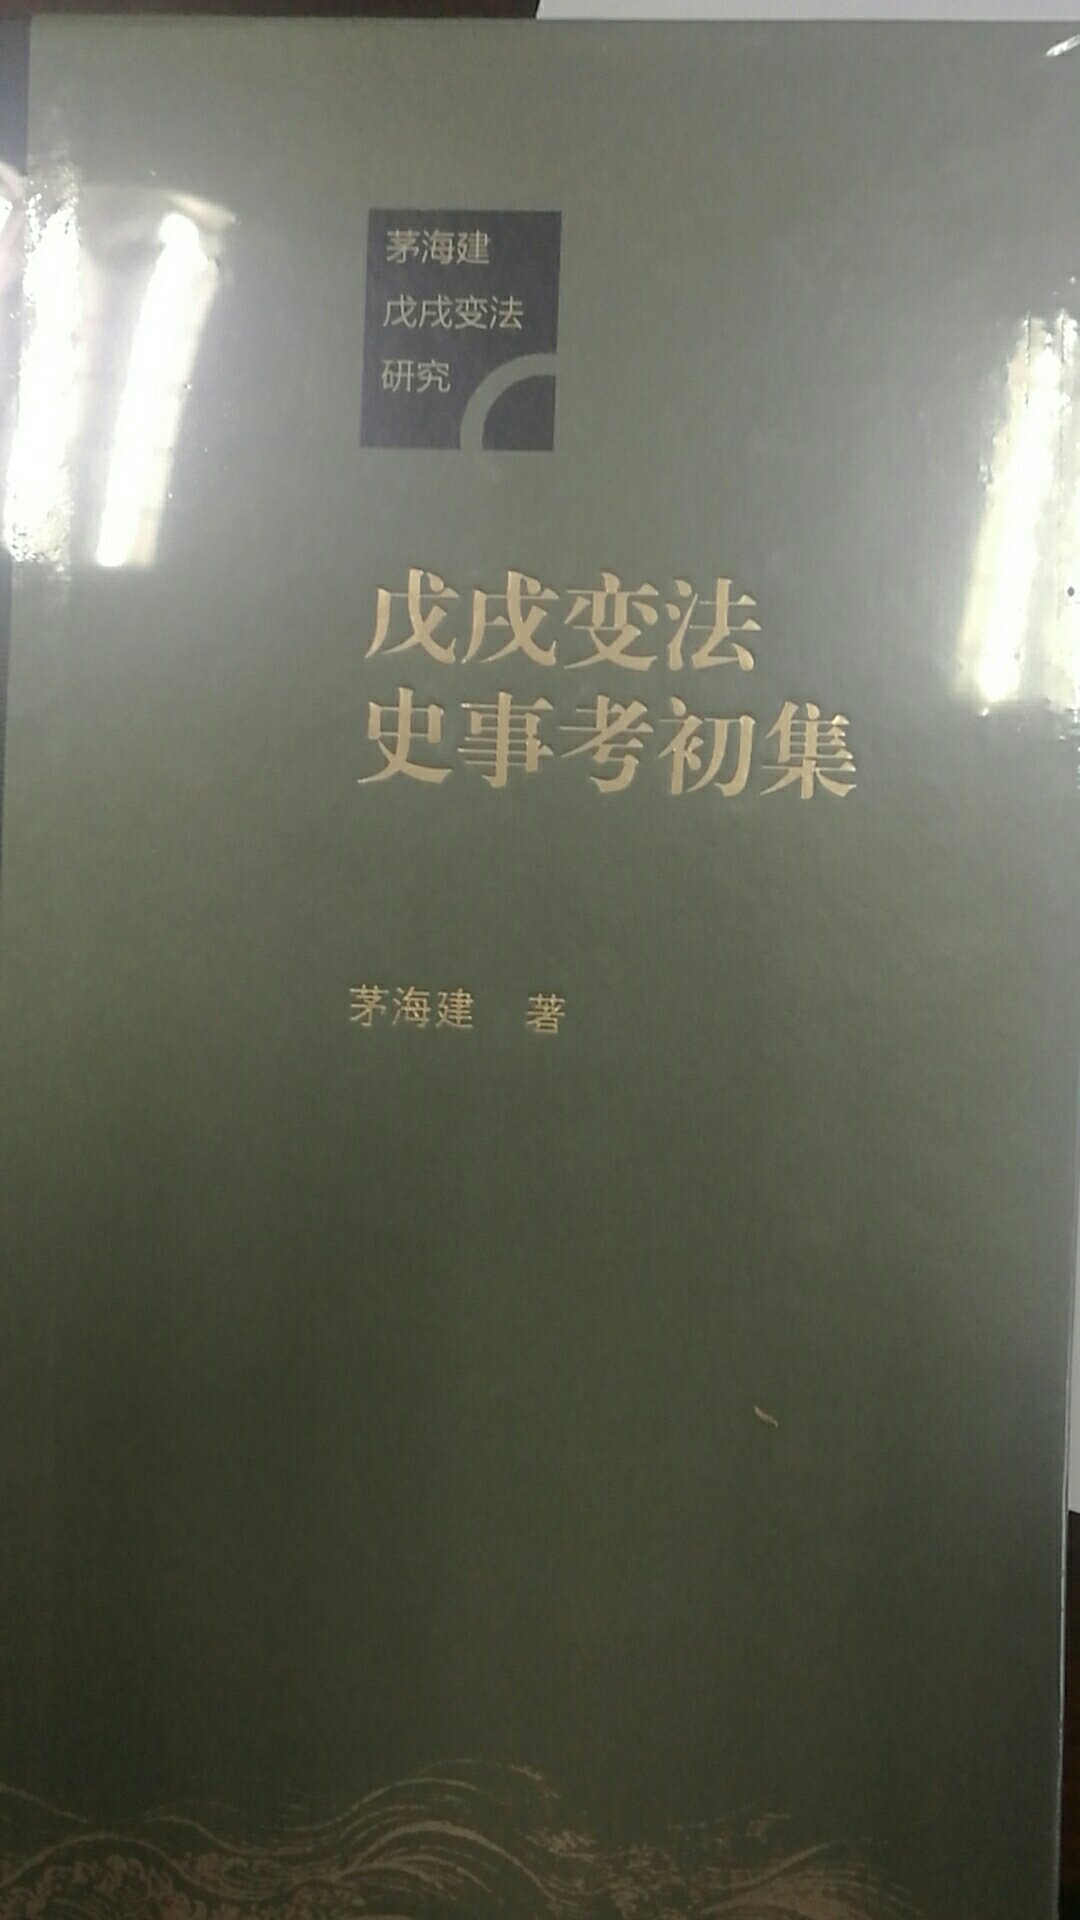 茅海建先生的书见扎实的考据，历史细节值得玩味，反思中华近代历史。